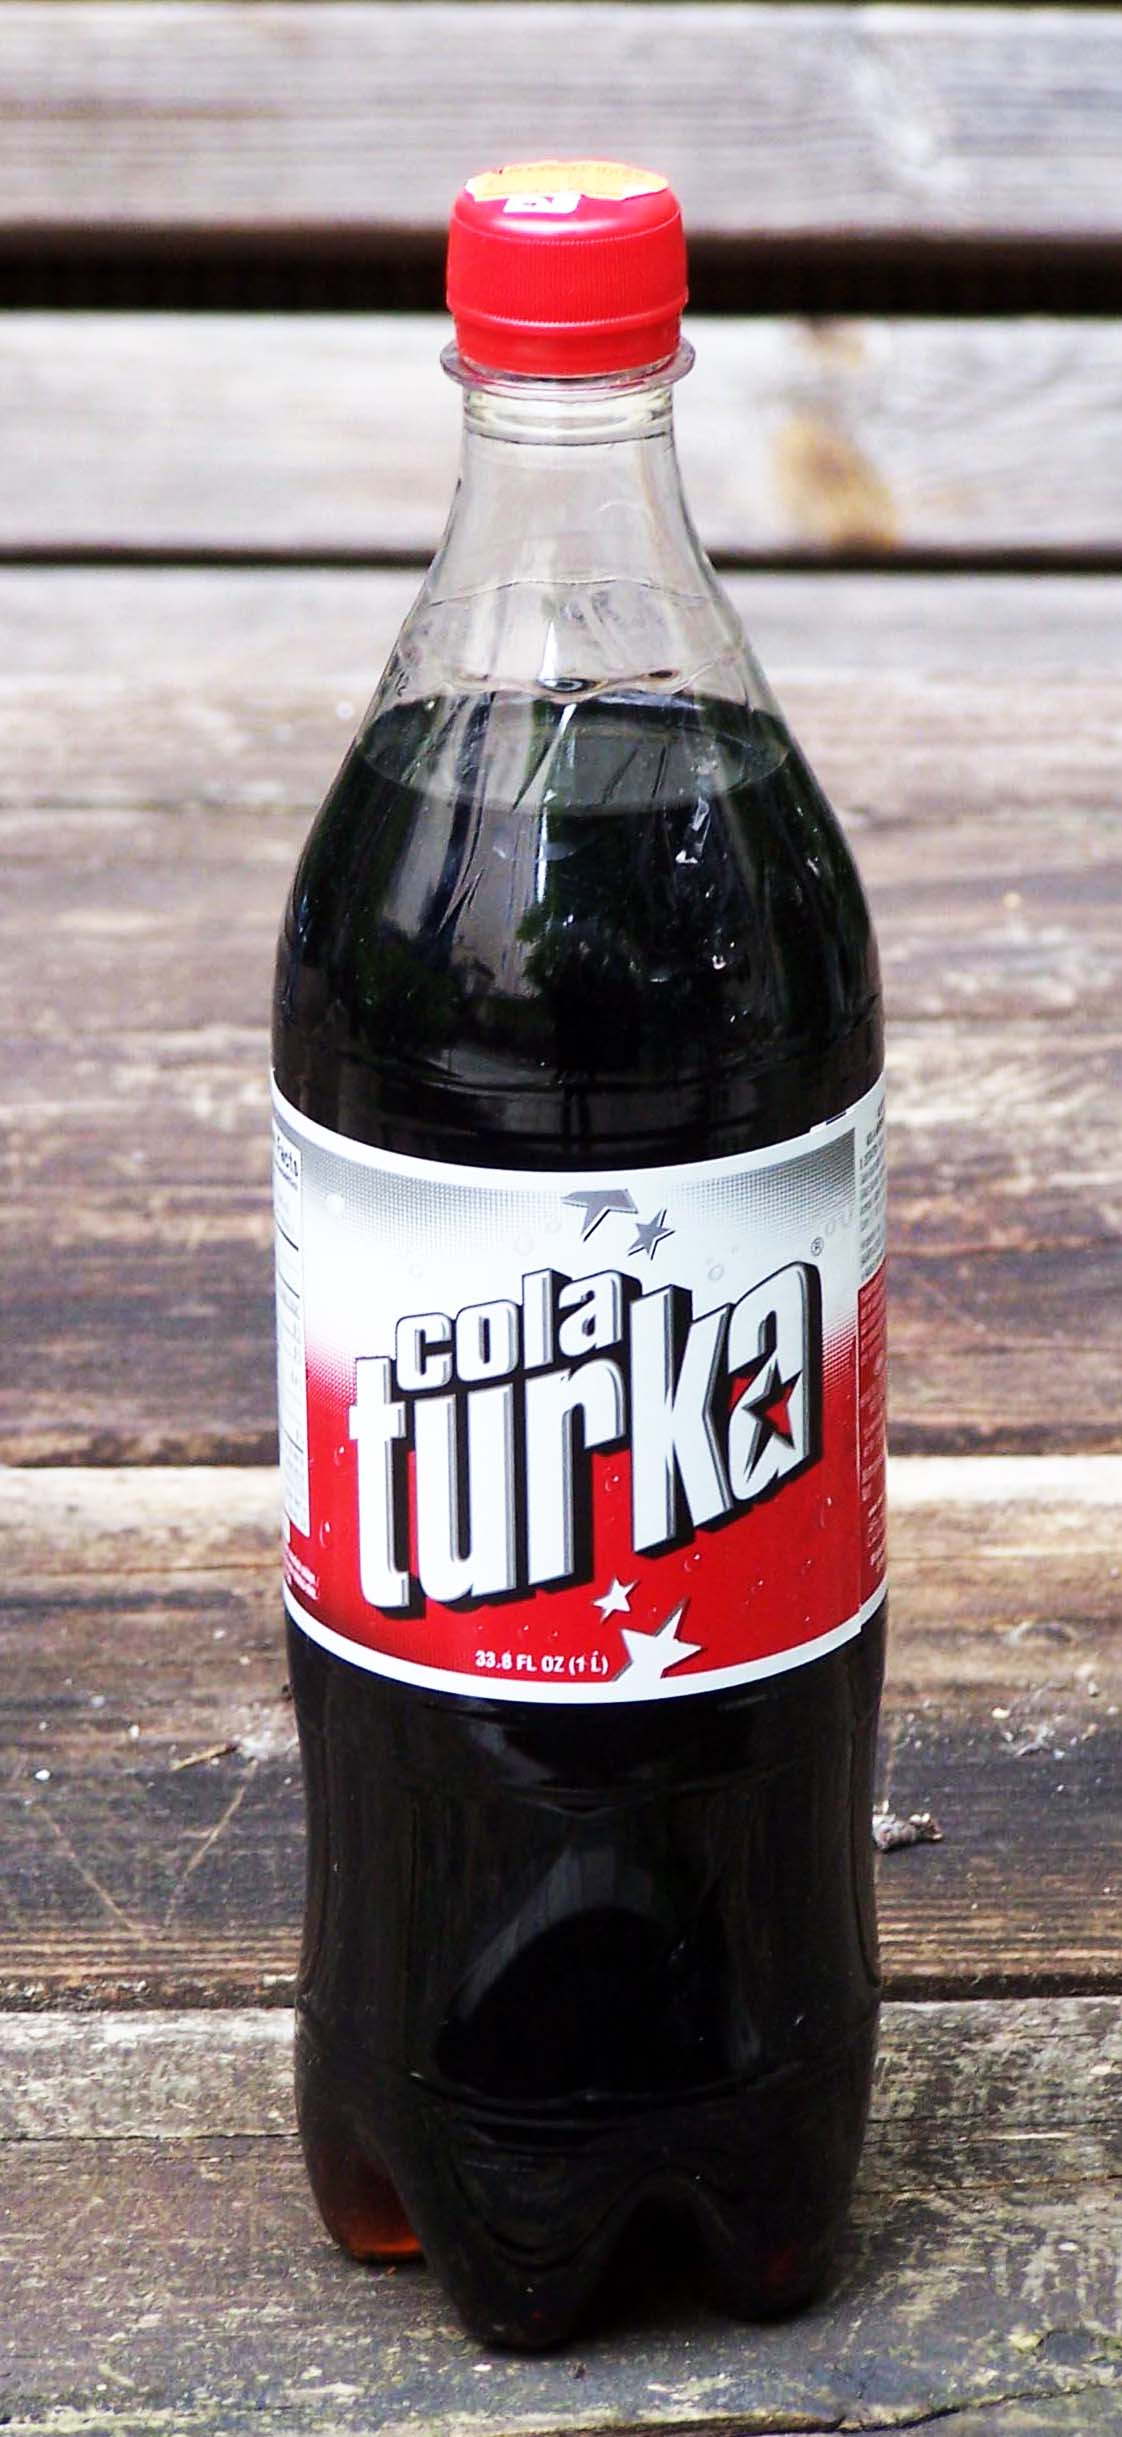 Liter Cola Turka, Flasche 1 Liter 99 Cent